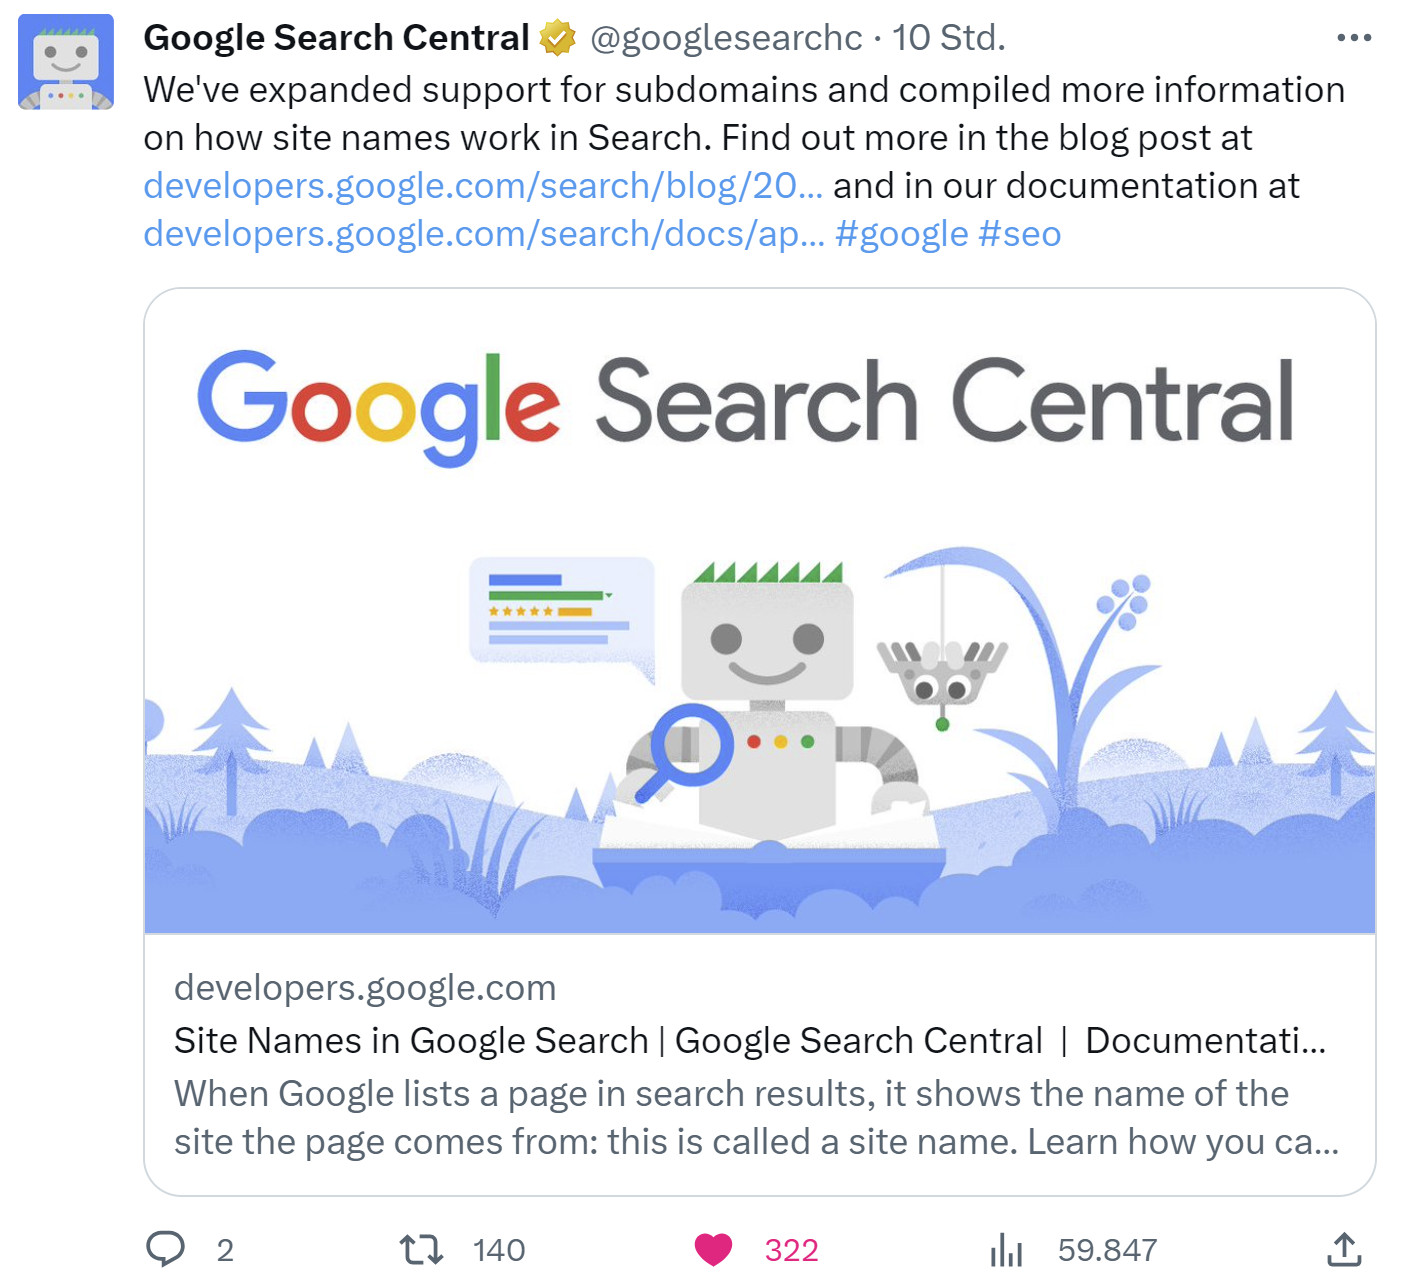 Google erweitert Unterstützung von Subdomains bei der Anzeige von Website-Namen